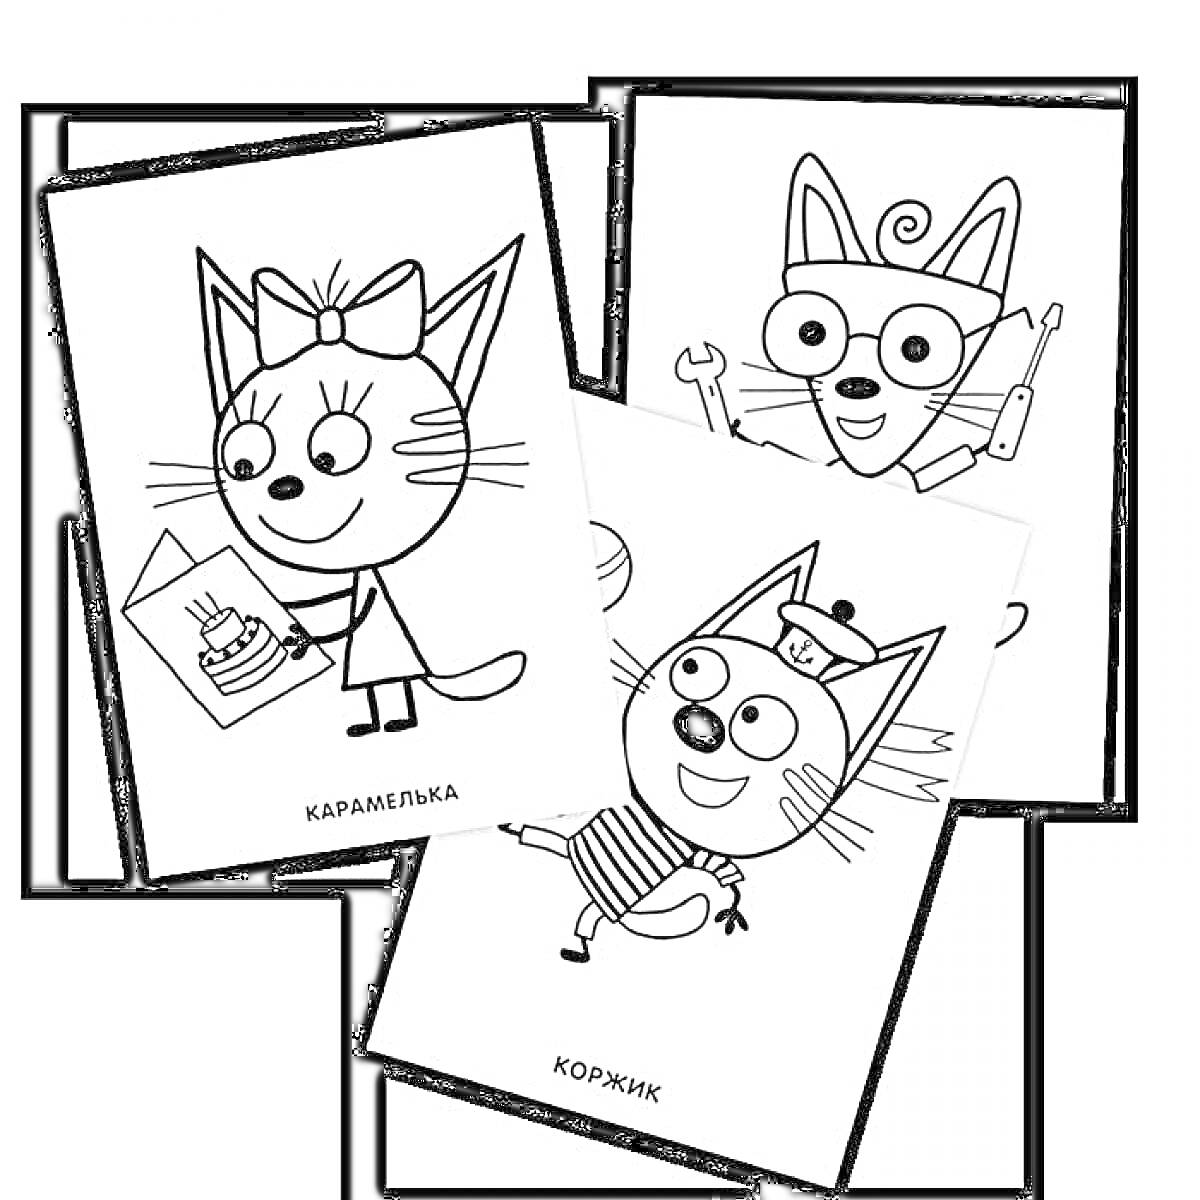 Три кота - три кошачьих персонажа, один держит рисунок торта, второй с гайковертом и большими очками, третий в полосатой футболке и с фуражкой, имя Коржик